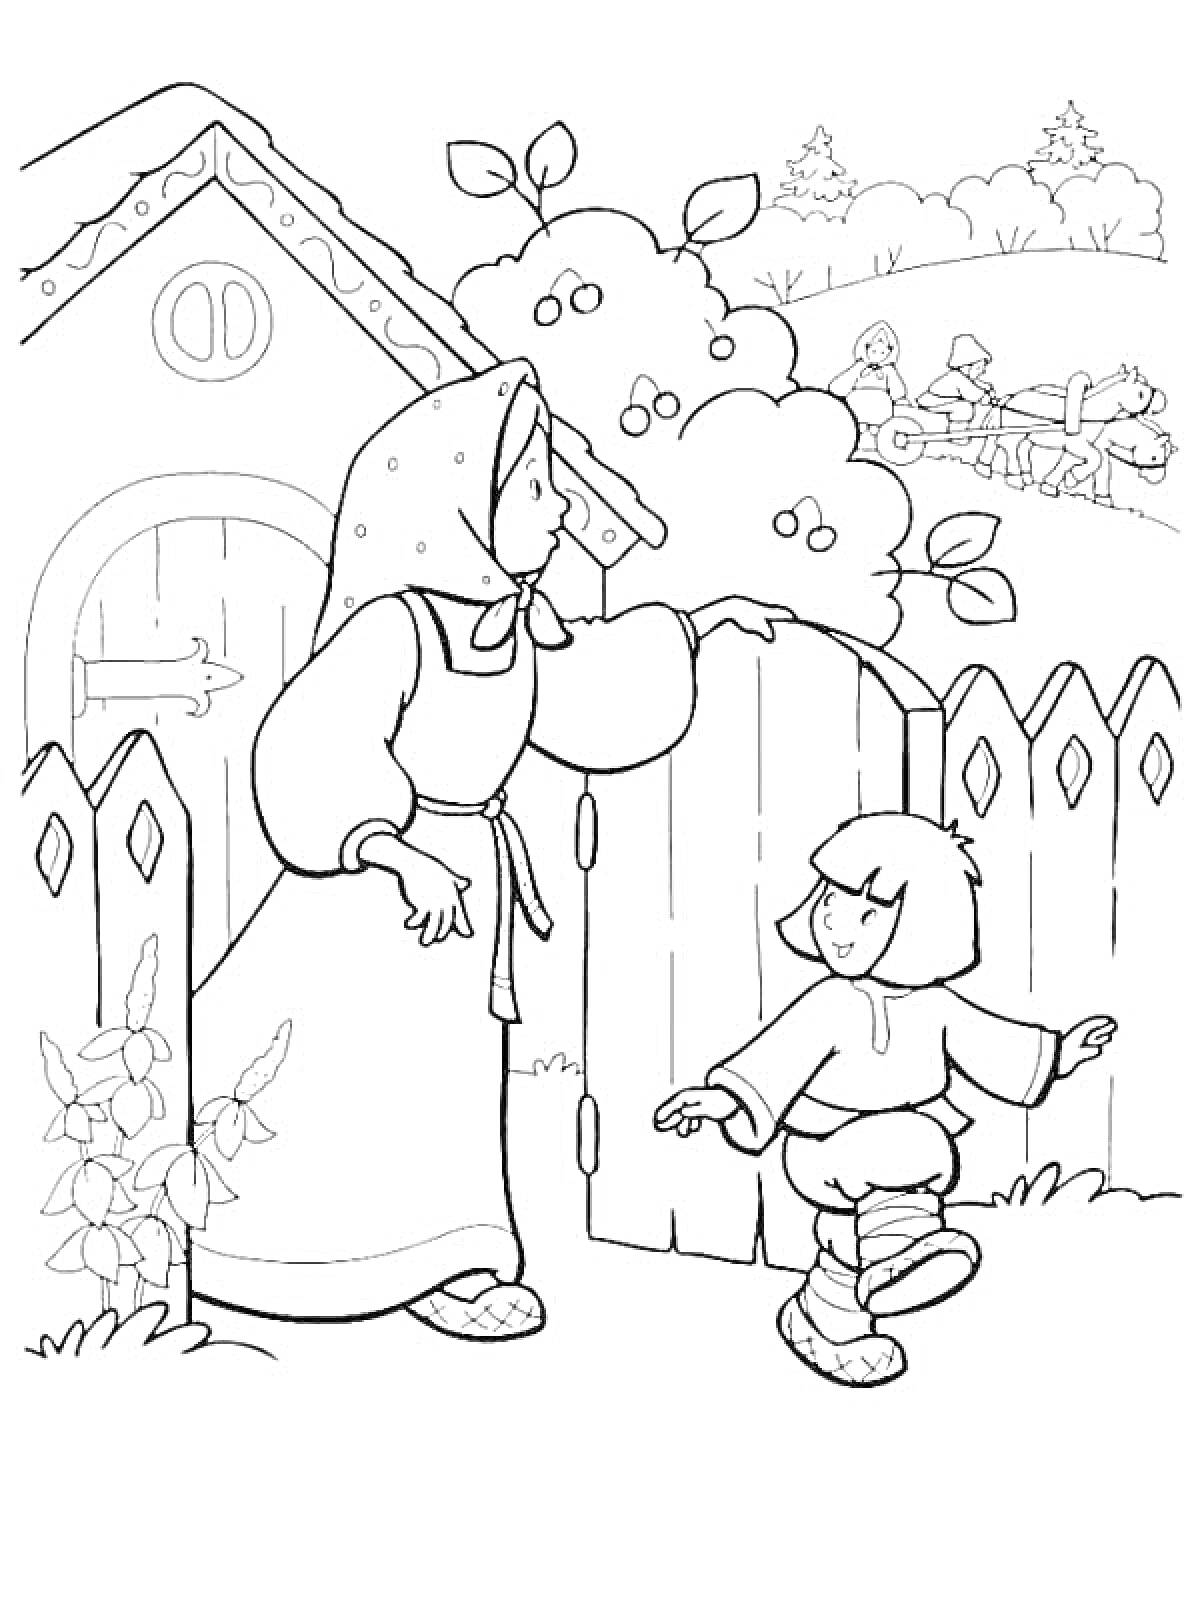 Раскраска Сестрица Аленушка и братец Иванушка у калитки возле дома с кустом, на заднем плане лес и фигуры всадников